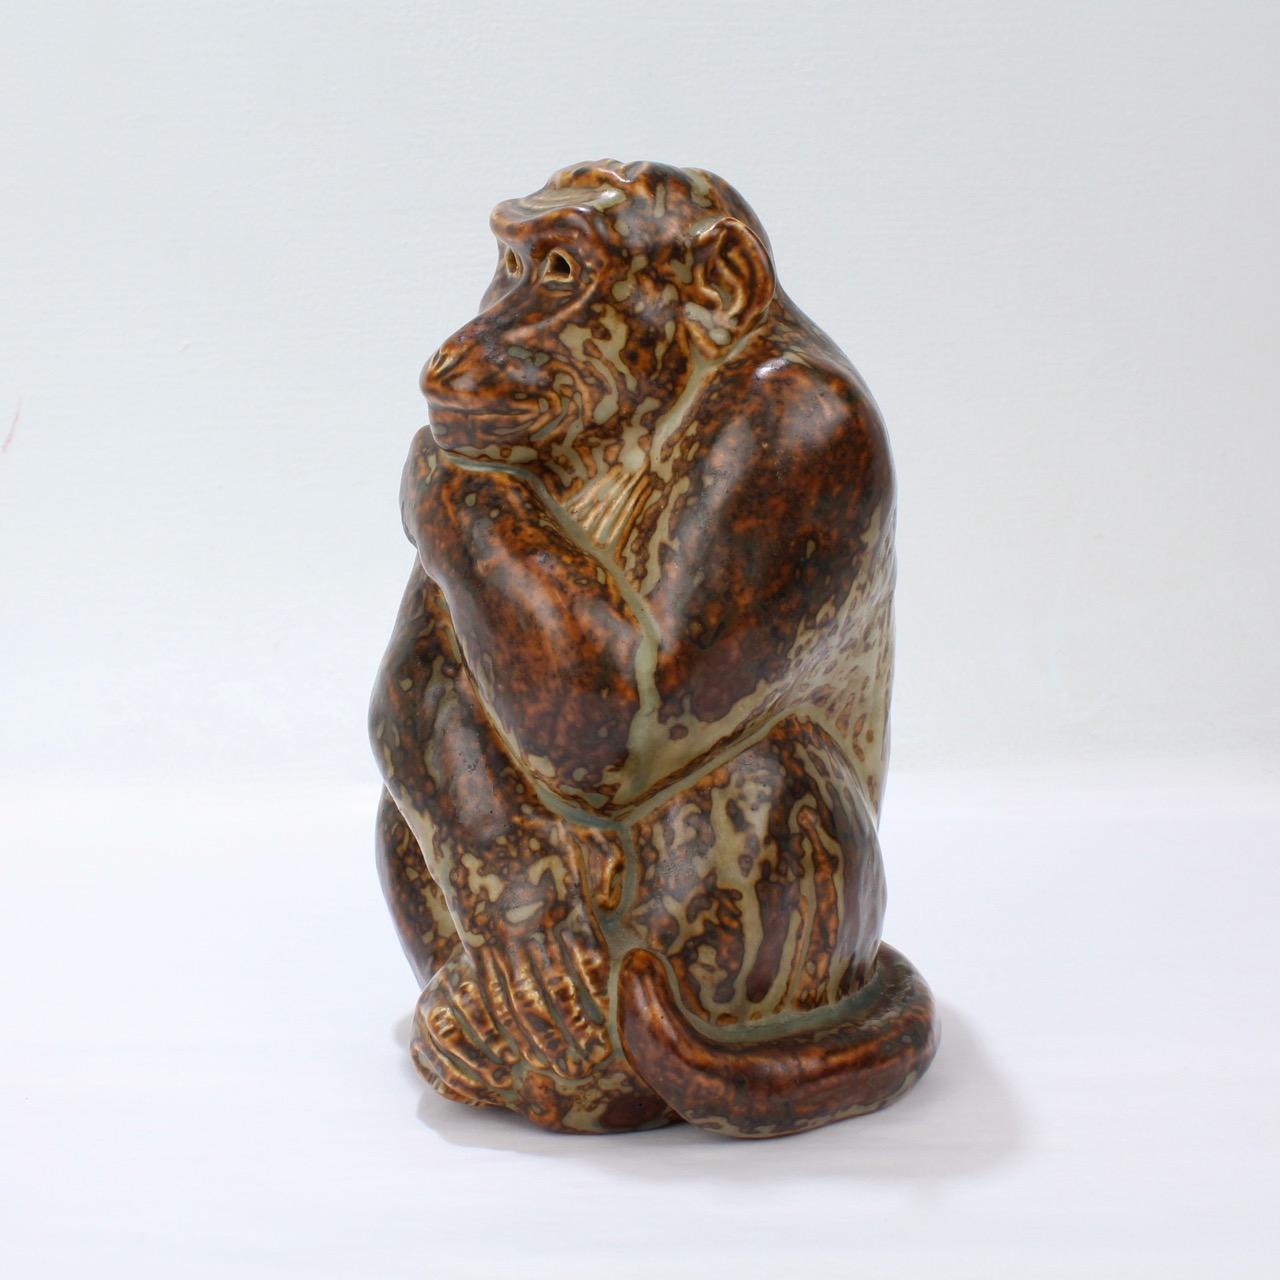 Ein wunderschönes Steingutmodell eines Affen, entworfen von Knud Khyn für Royal Copenhagen.

Knud Khyn (1880-1969) war ein dänischer Bildhauer und Maler. Er war ein wichtiger und langjähriger Mitarbeiter von Royal Copenhagen und entwarf einige der